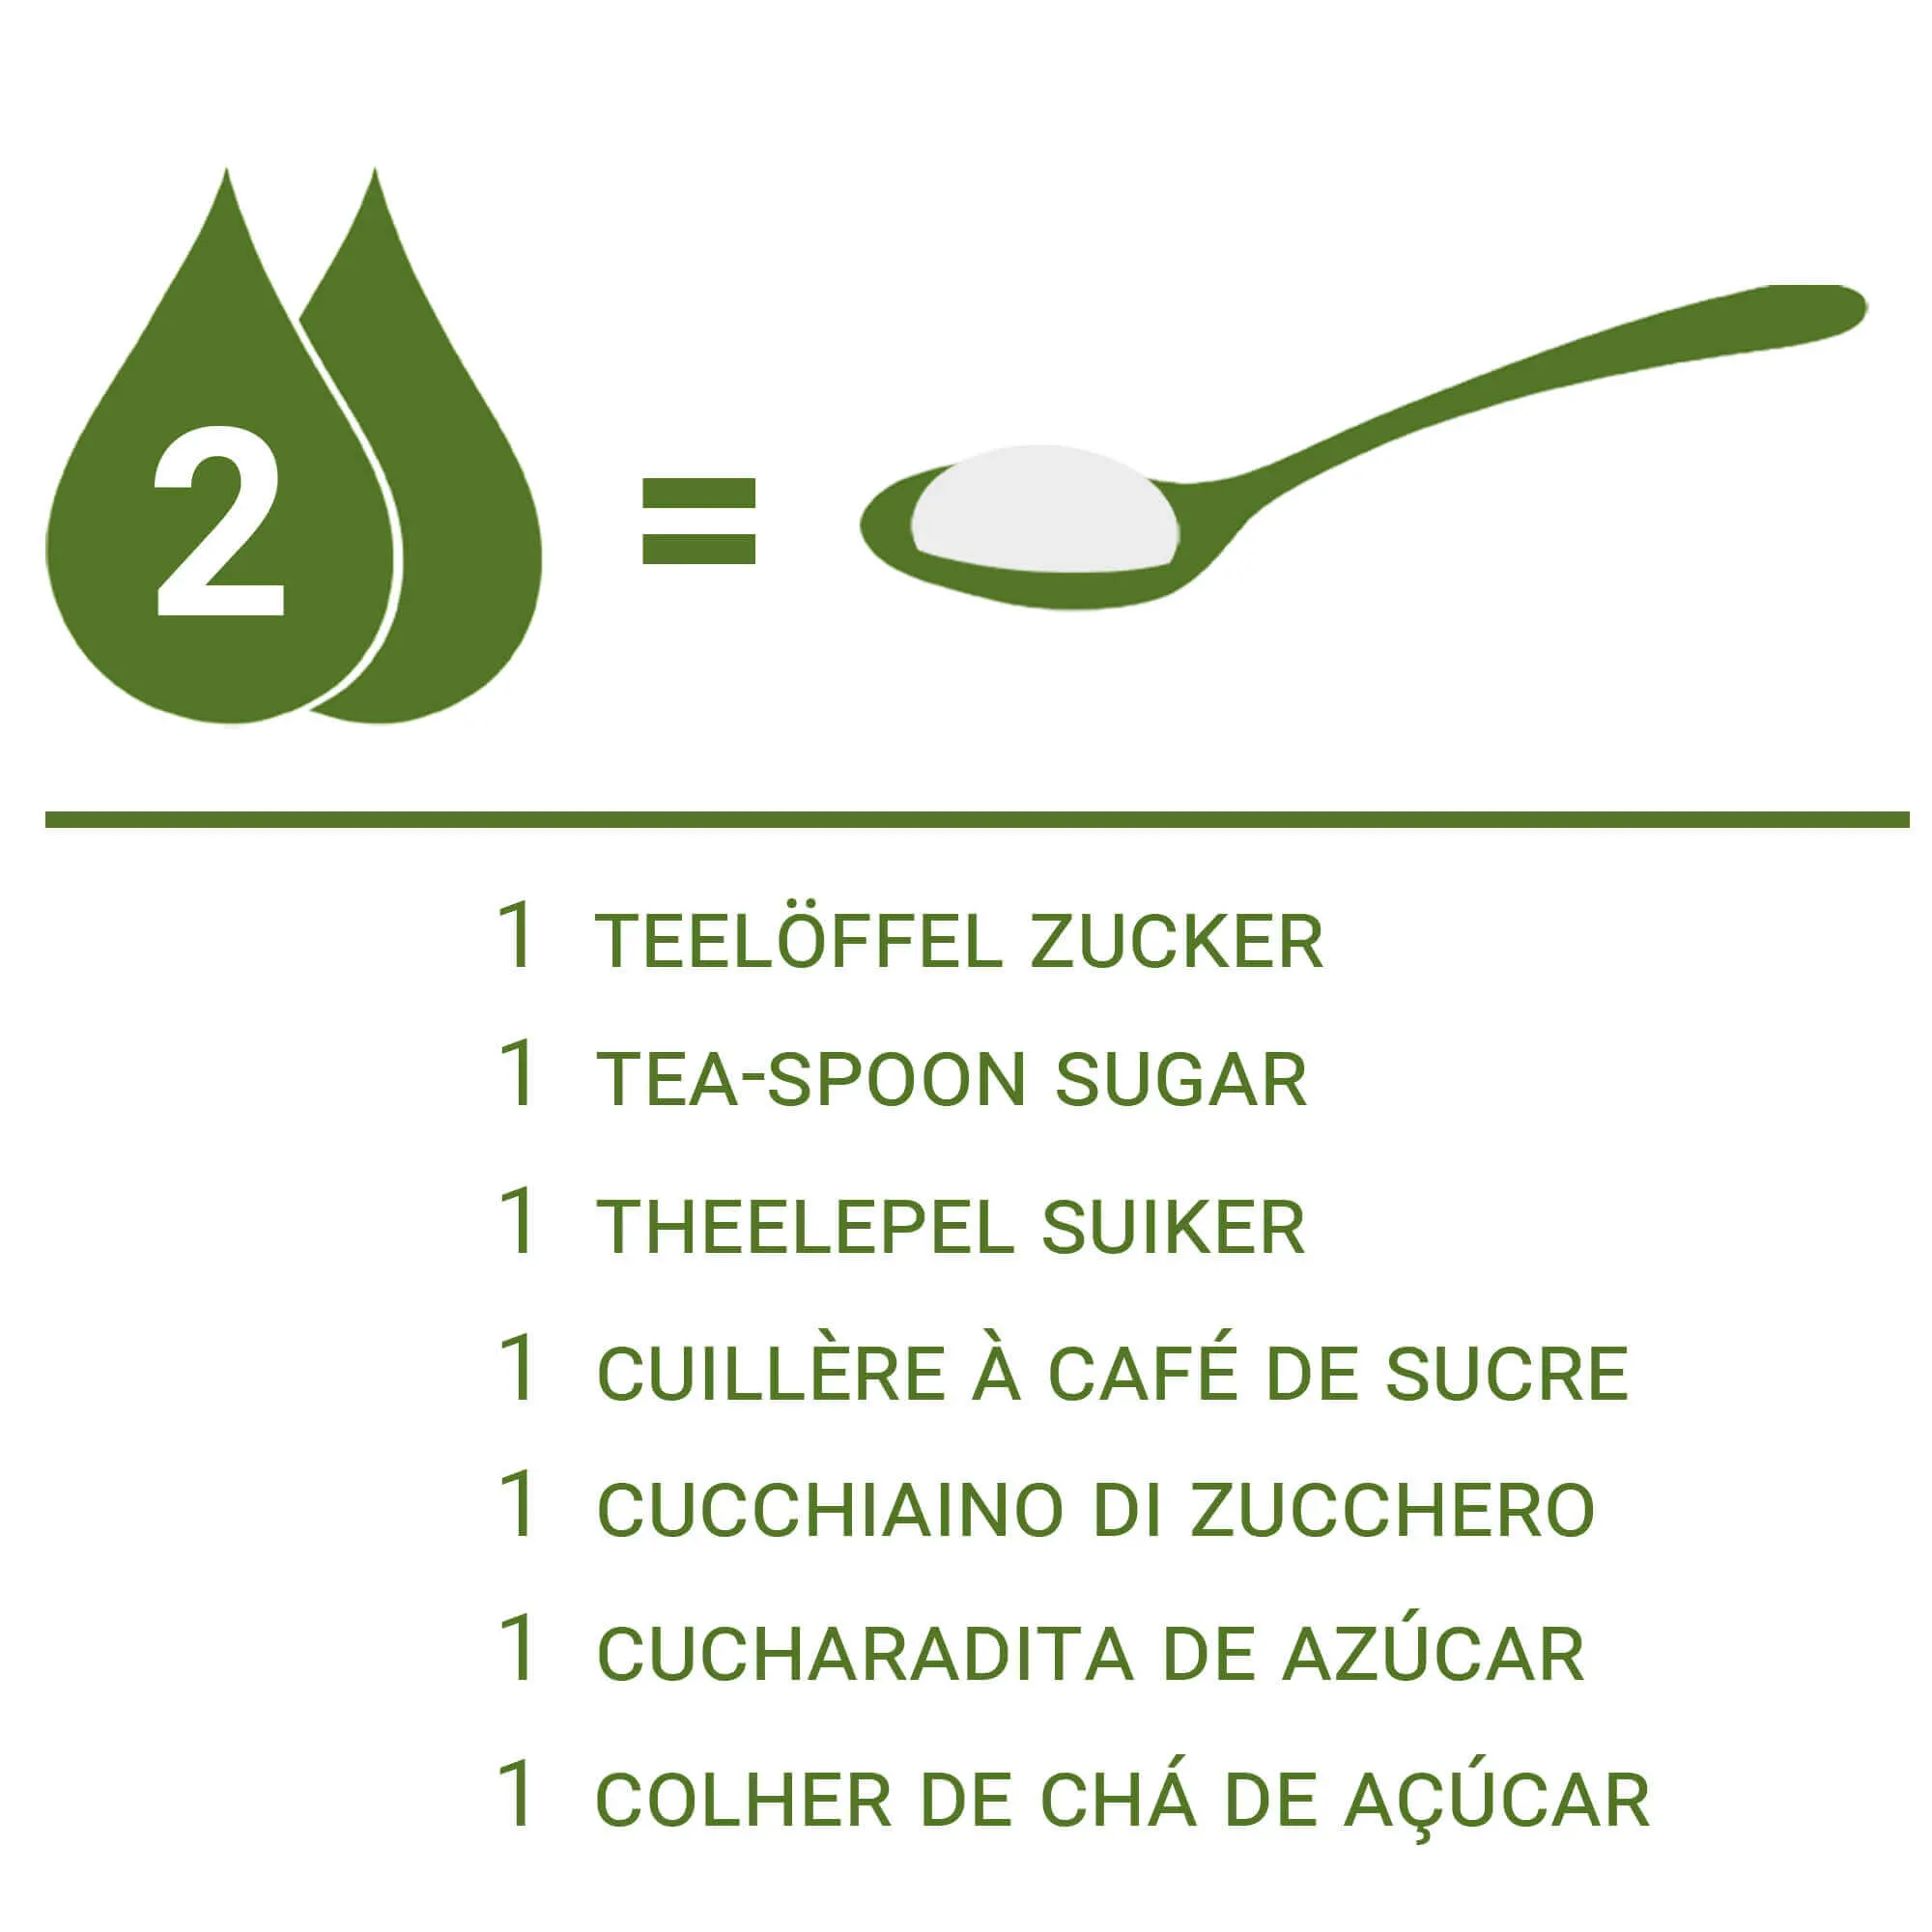 Il dosaggio della Stevia Liquida rispetto allo zucchero: 2 gocce pari a 1 cucchiaino di zucchero.